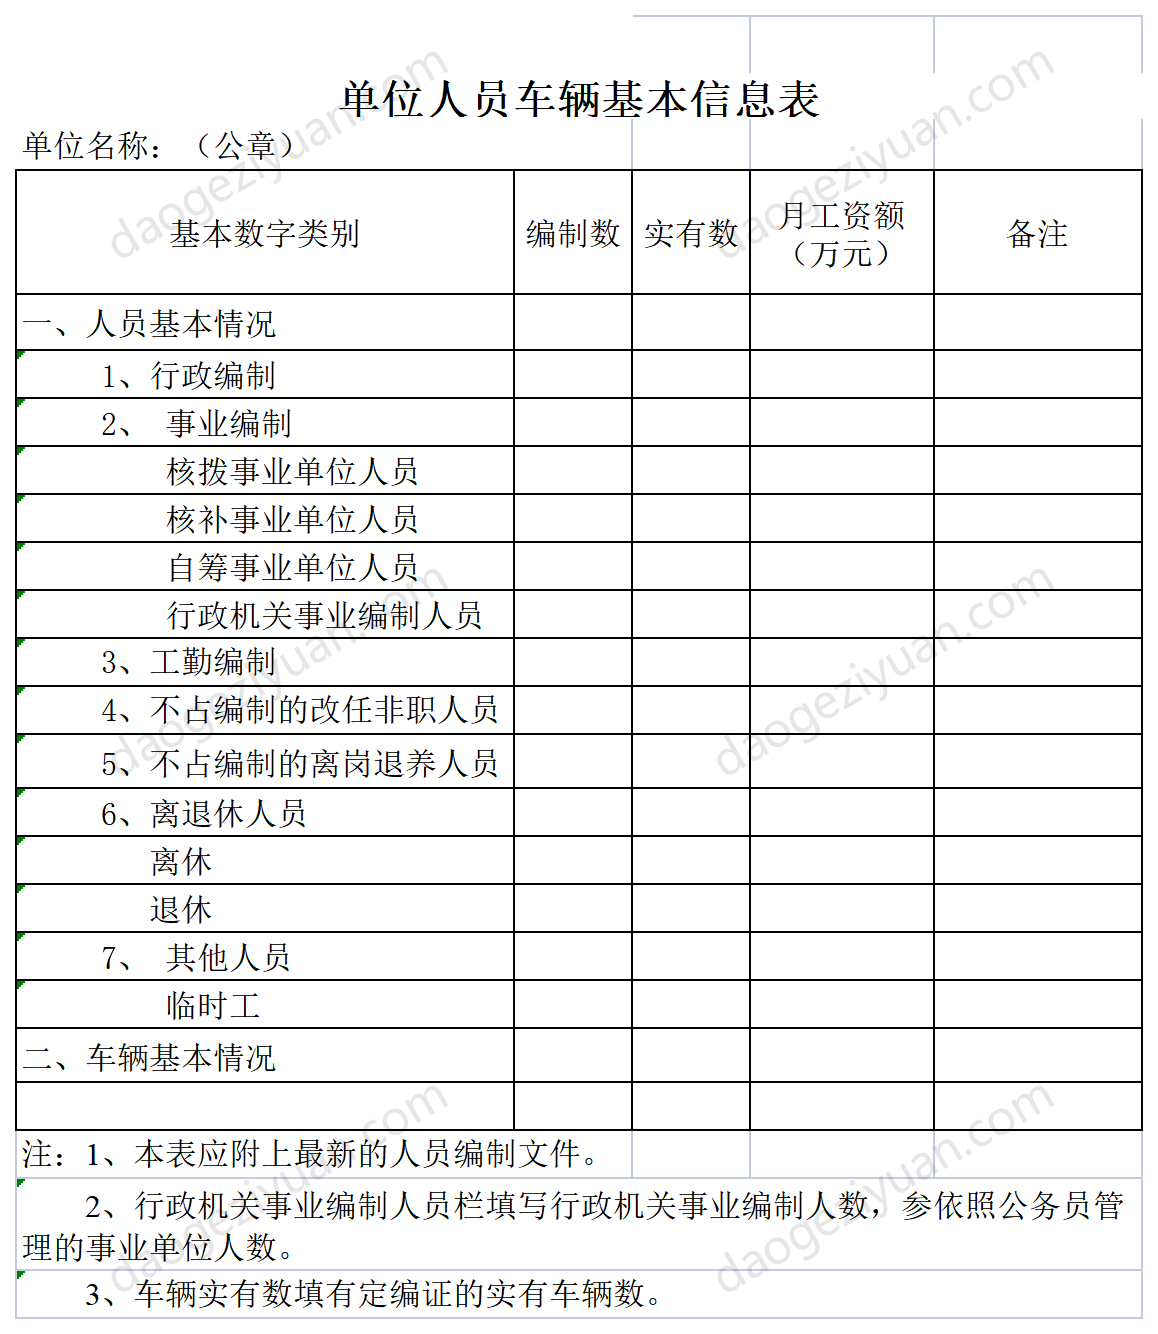 Unit Personnel Vehicle Basic Information Form.xls